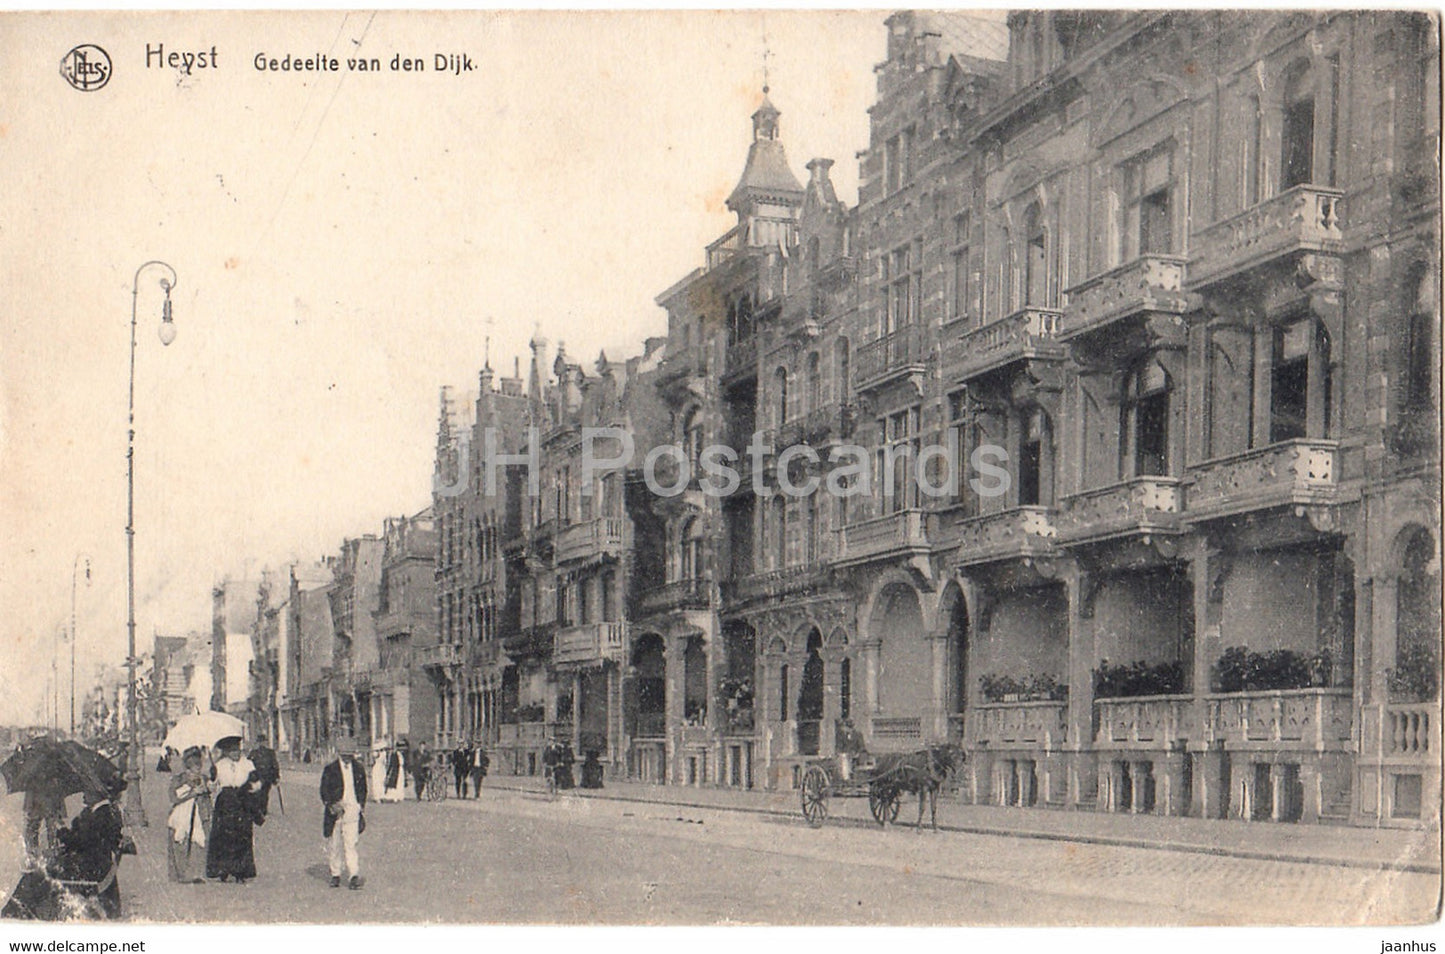 Heyst - Heist - Gedeelte van den Dijk - Feldpost - old postcard - 1917 - Belgium - used - JH Postcards